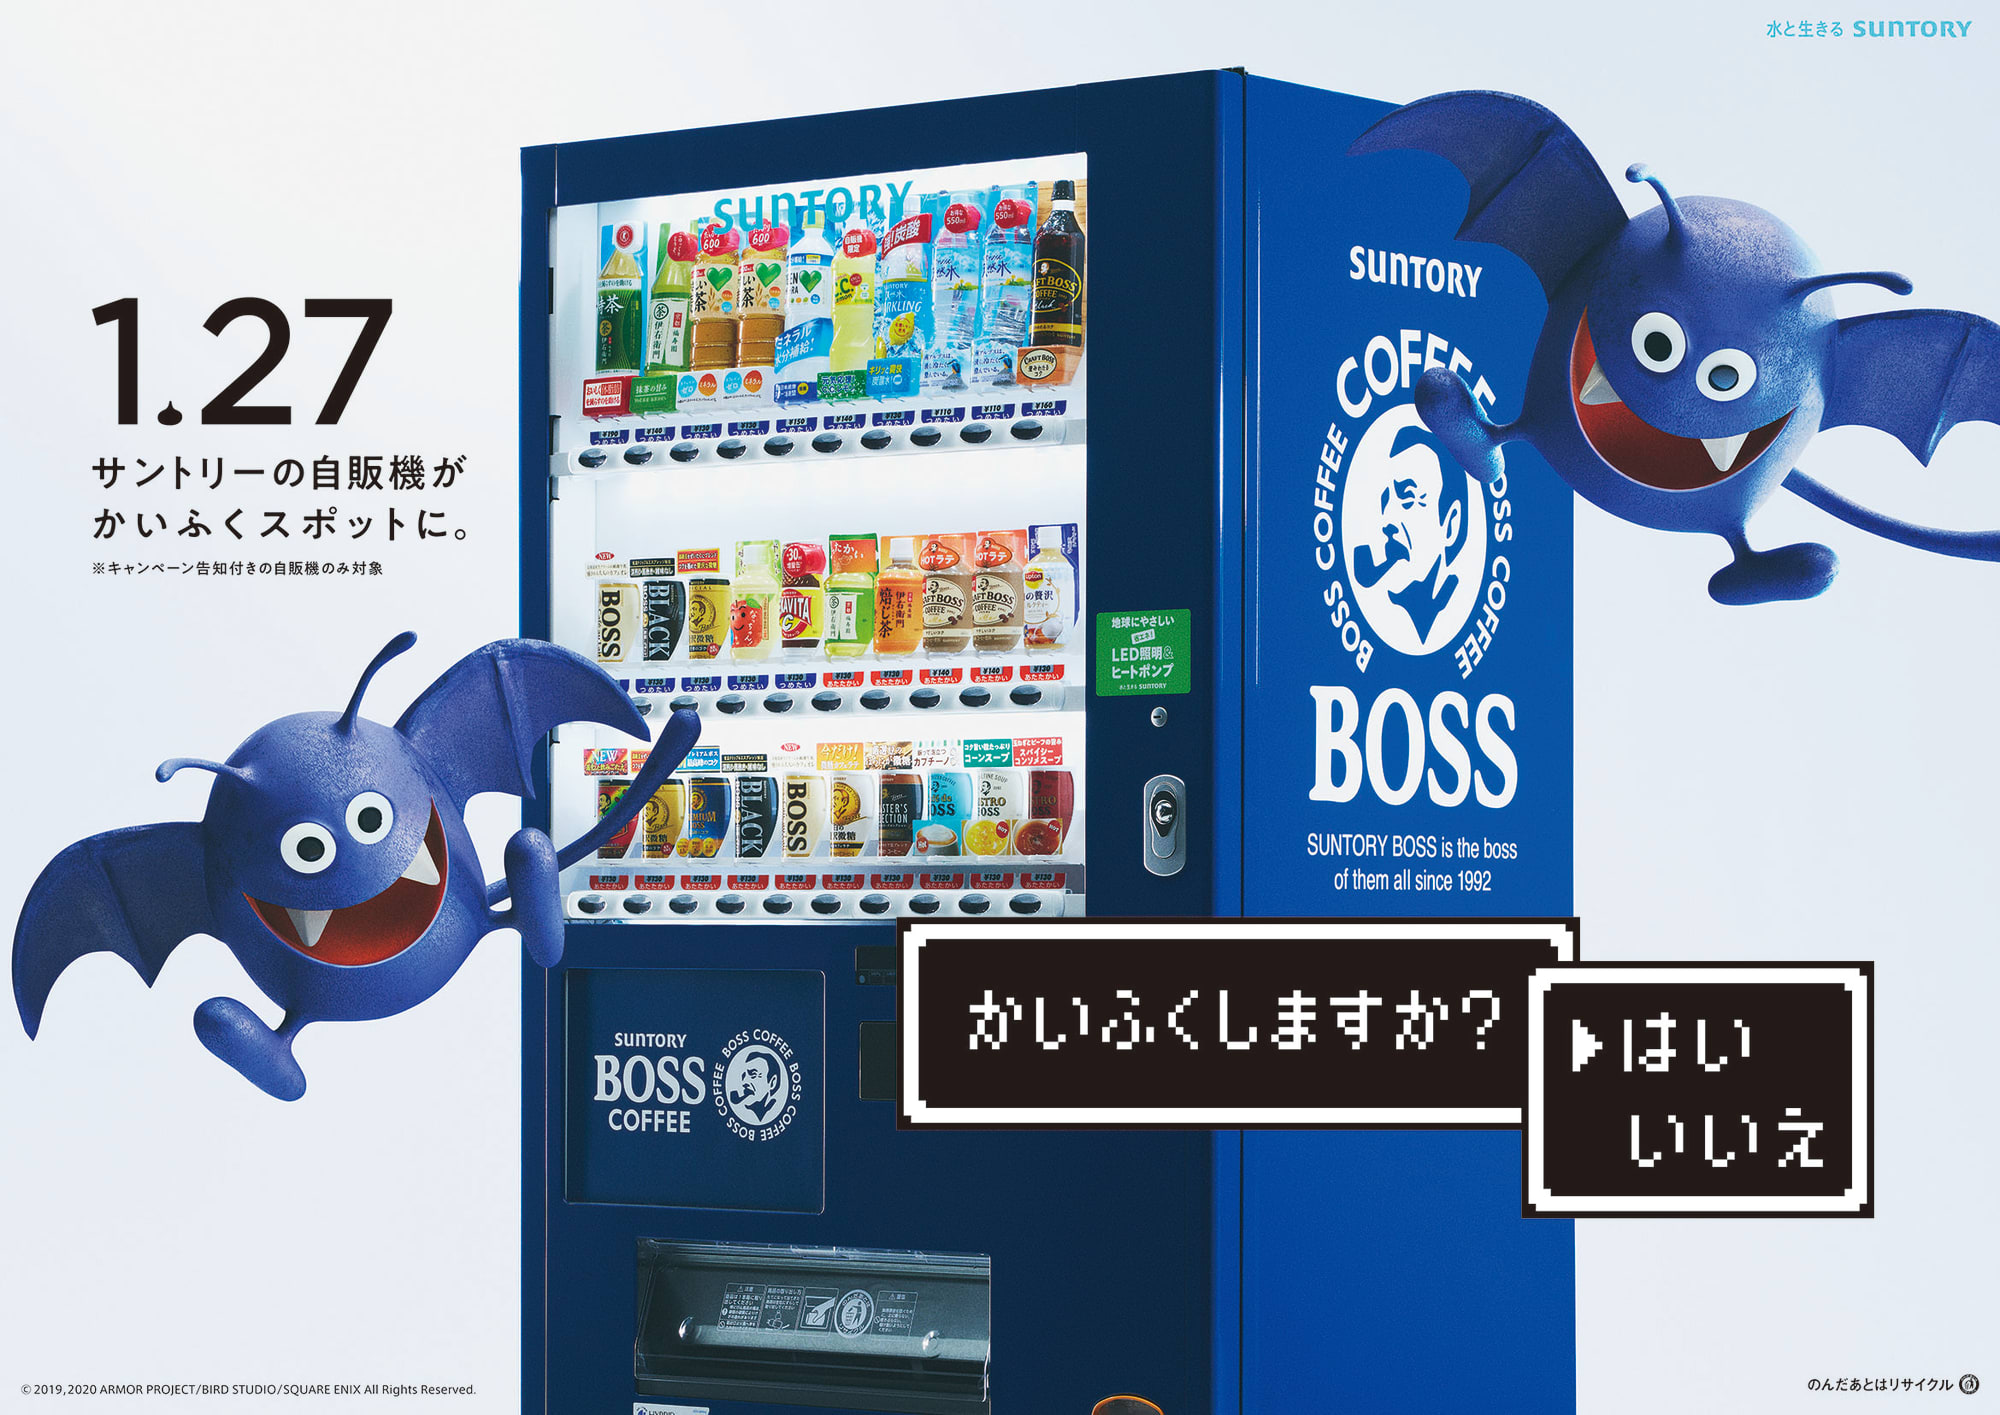 サントリーの自動販売機がdqウォークの かいふくスポット に Engadget 日本版